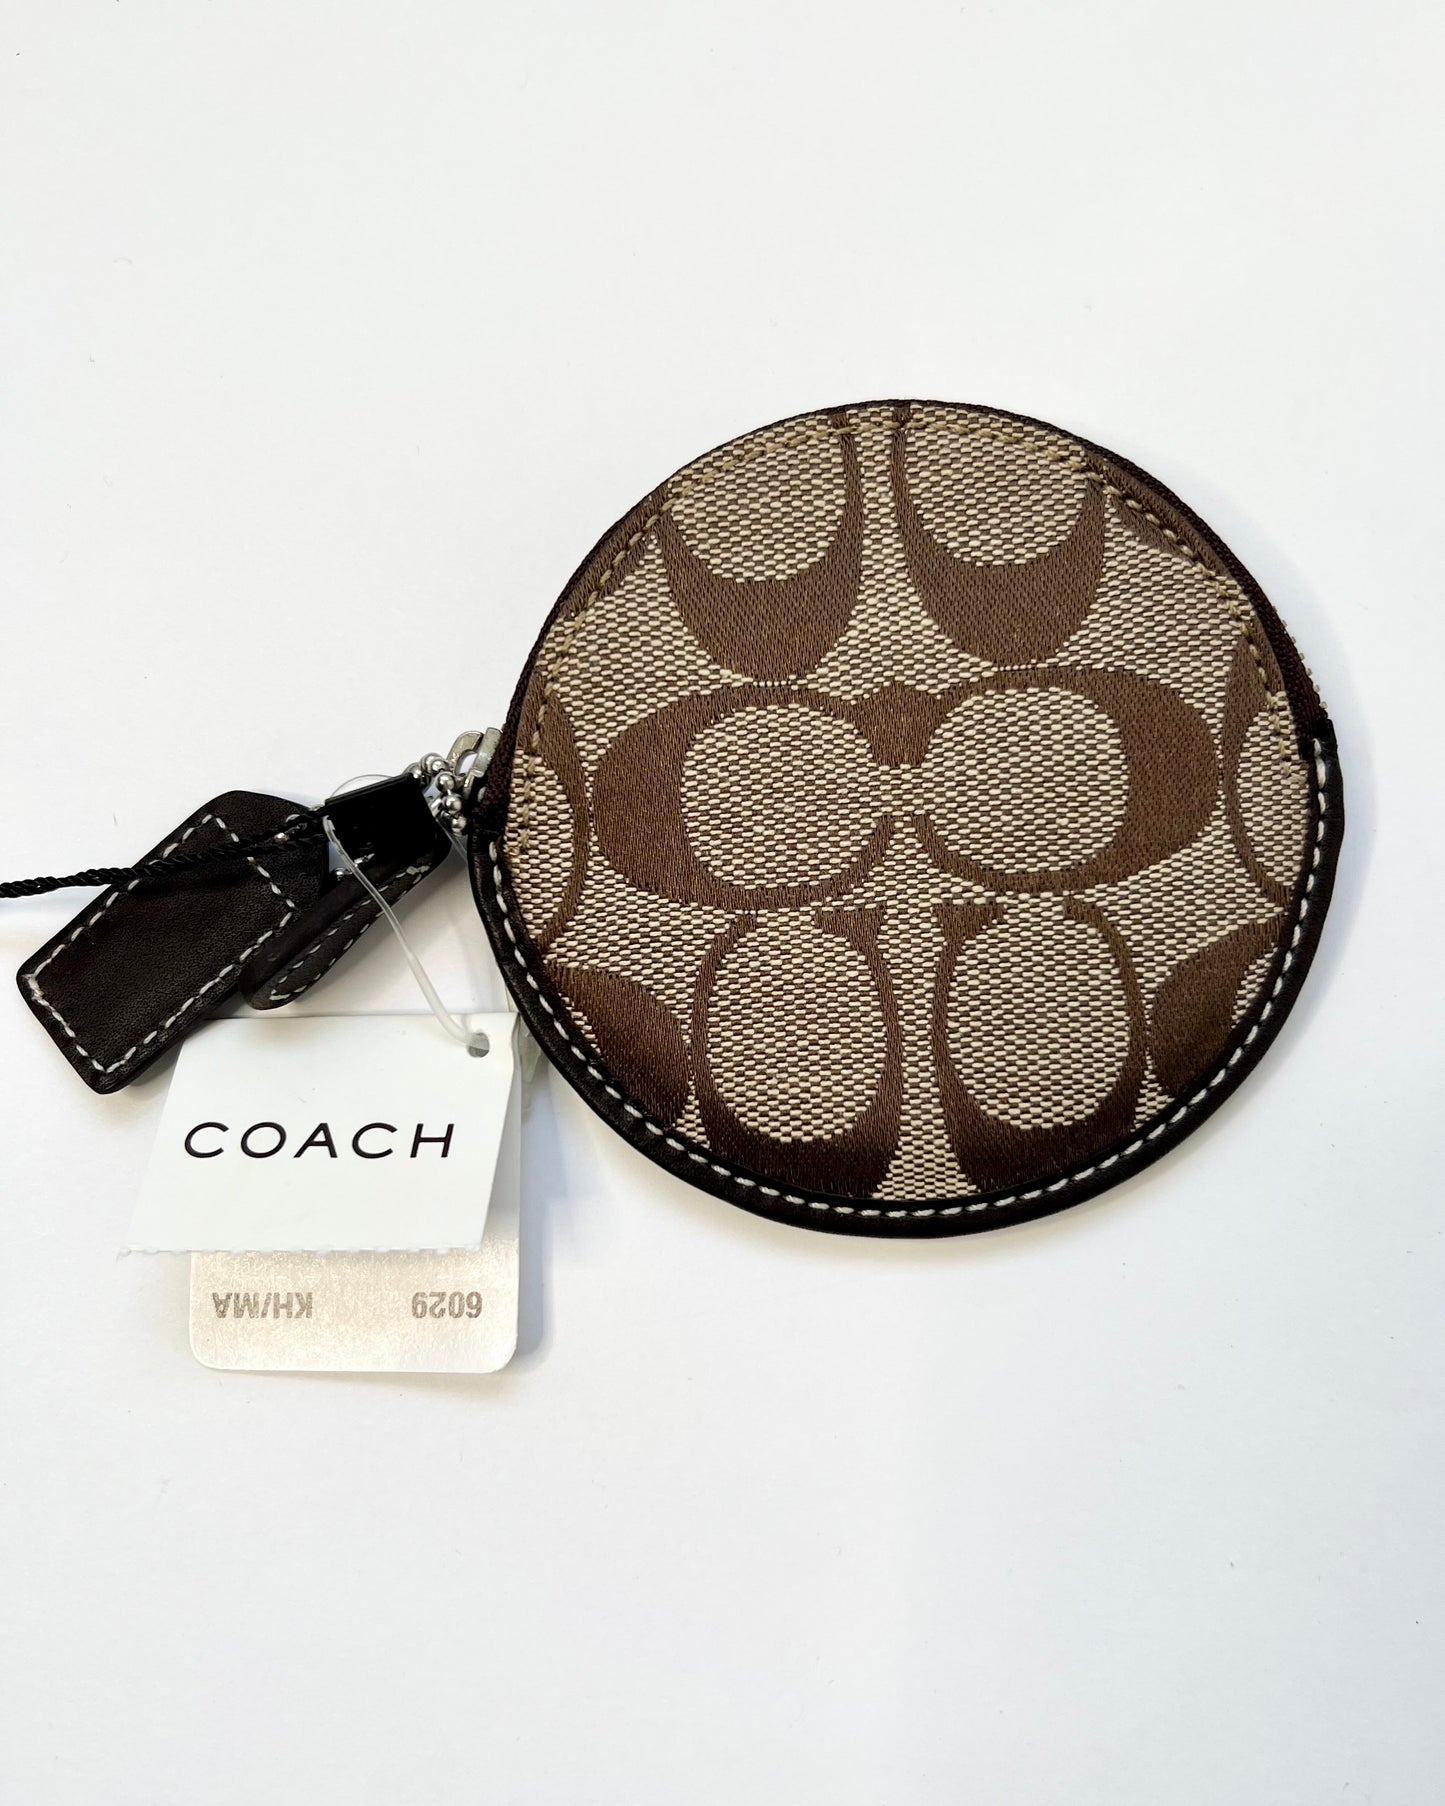 Coach Vintage Monogram Wristlet Pouch Bag